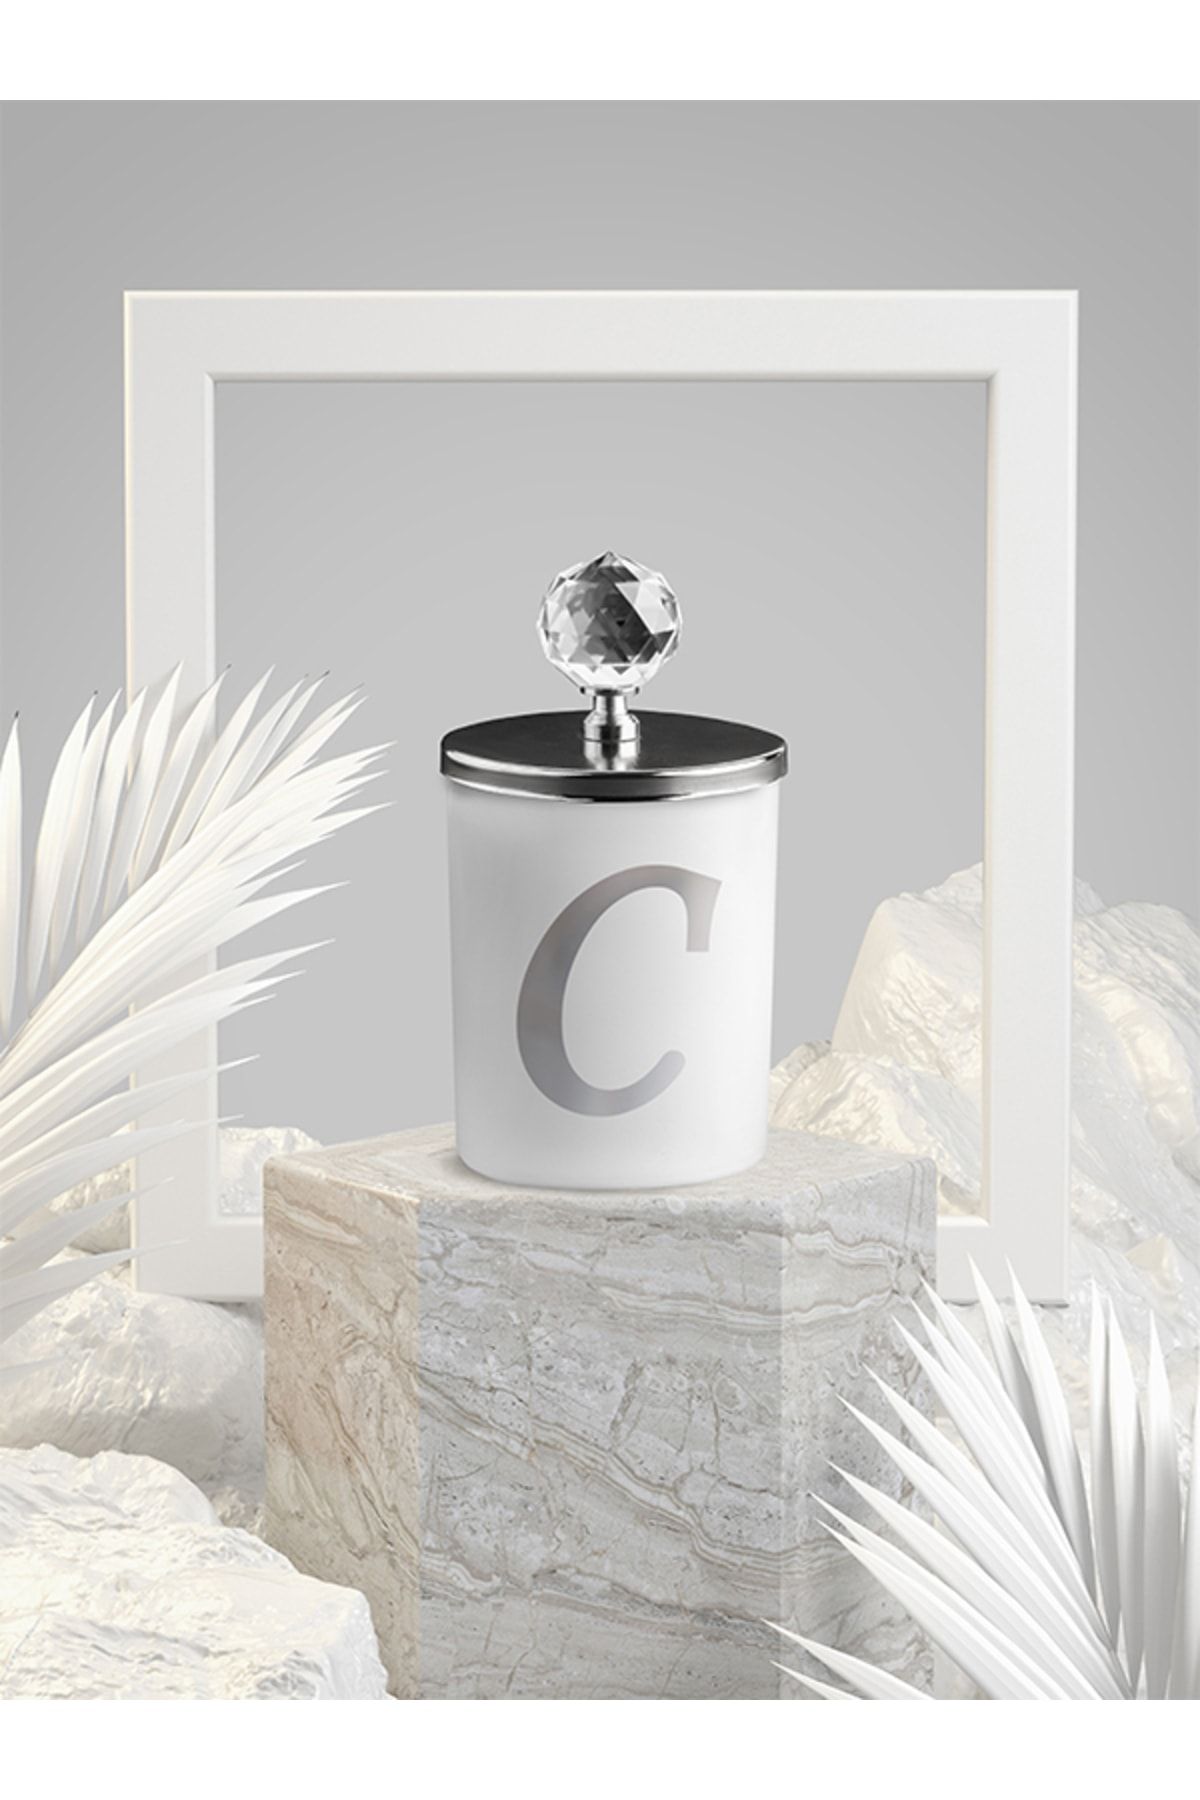 Tiem Concept Özel Tasarım C Harfli Vanilya Kokulu Gümüş Kristal Tepelikli Beyaz Bardak Mum